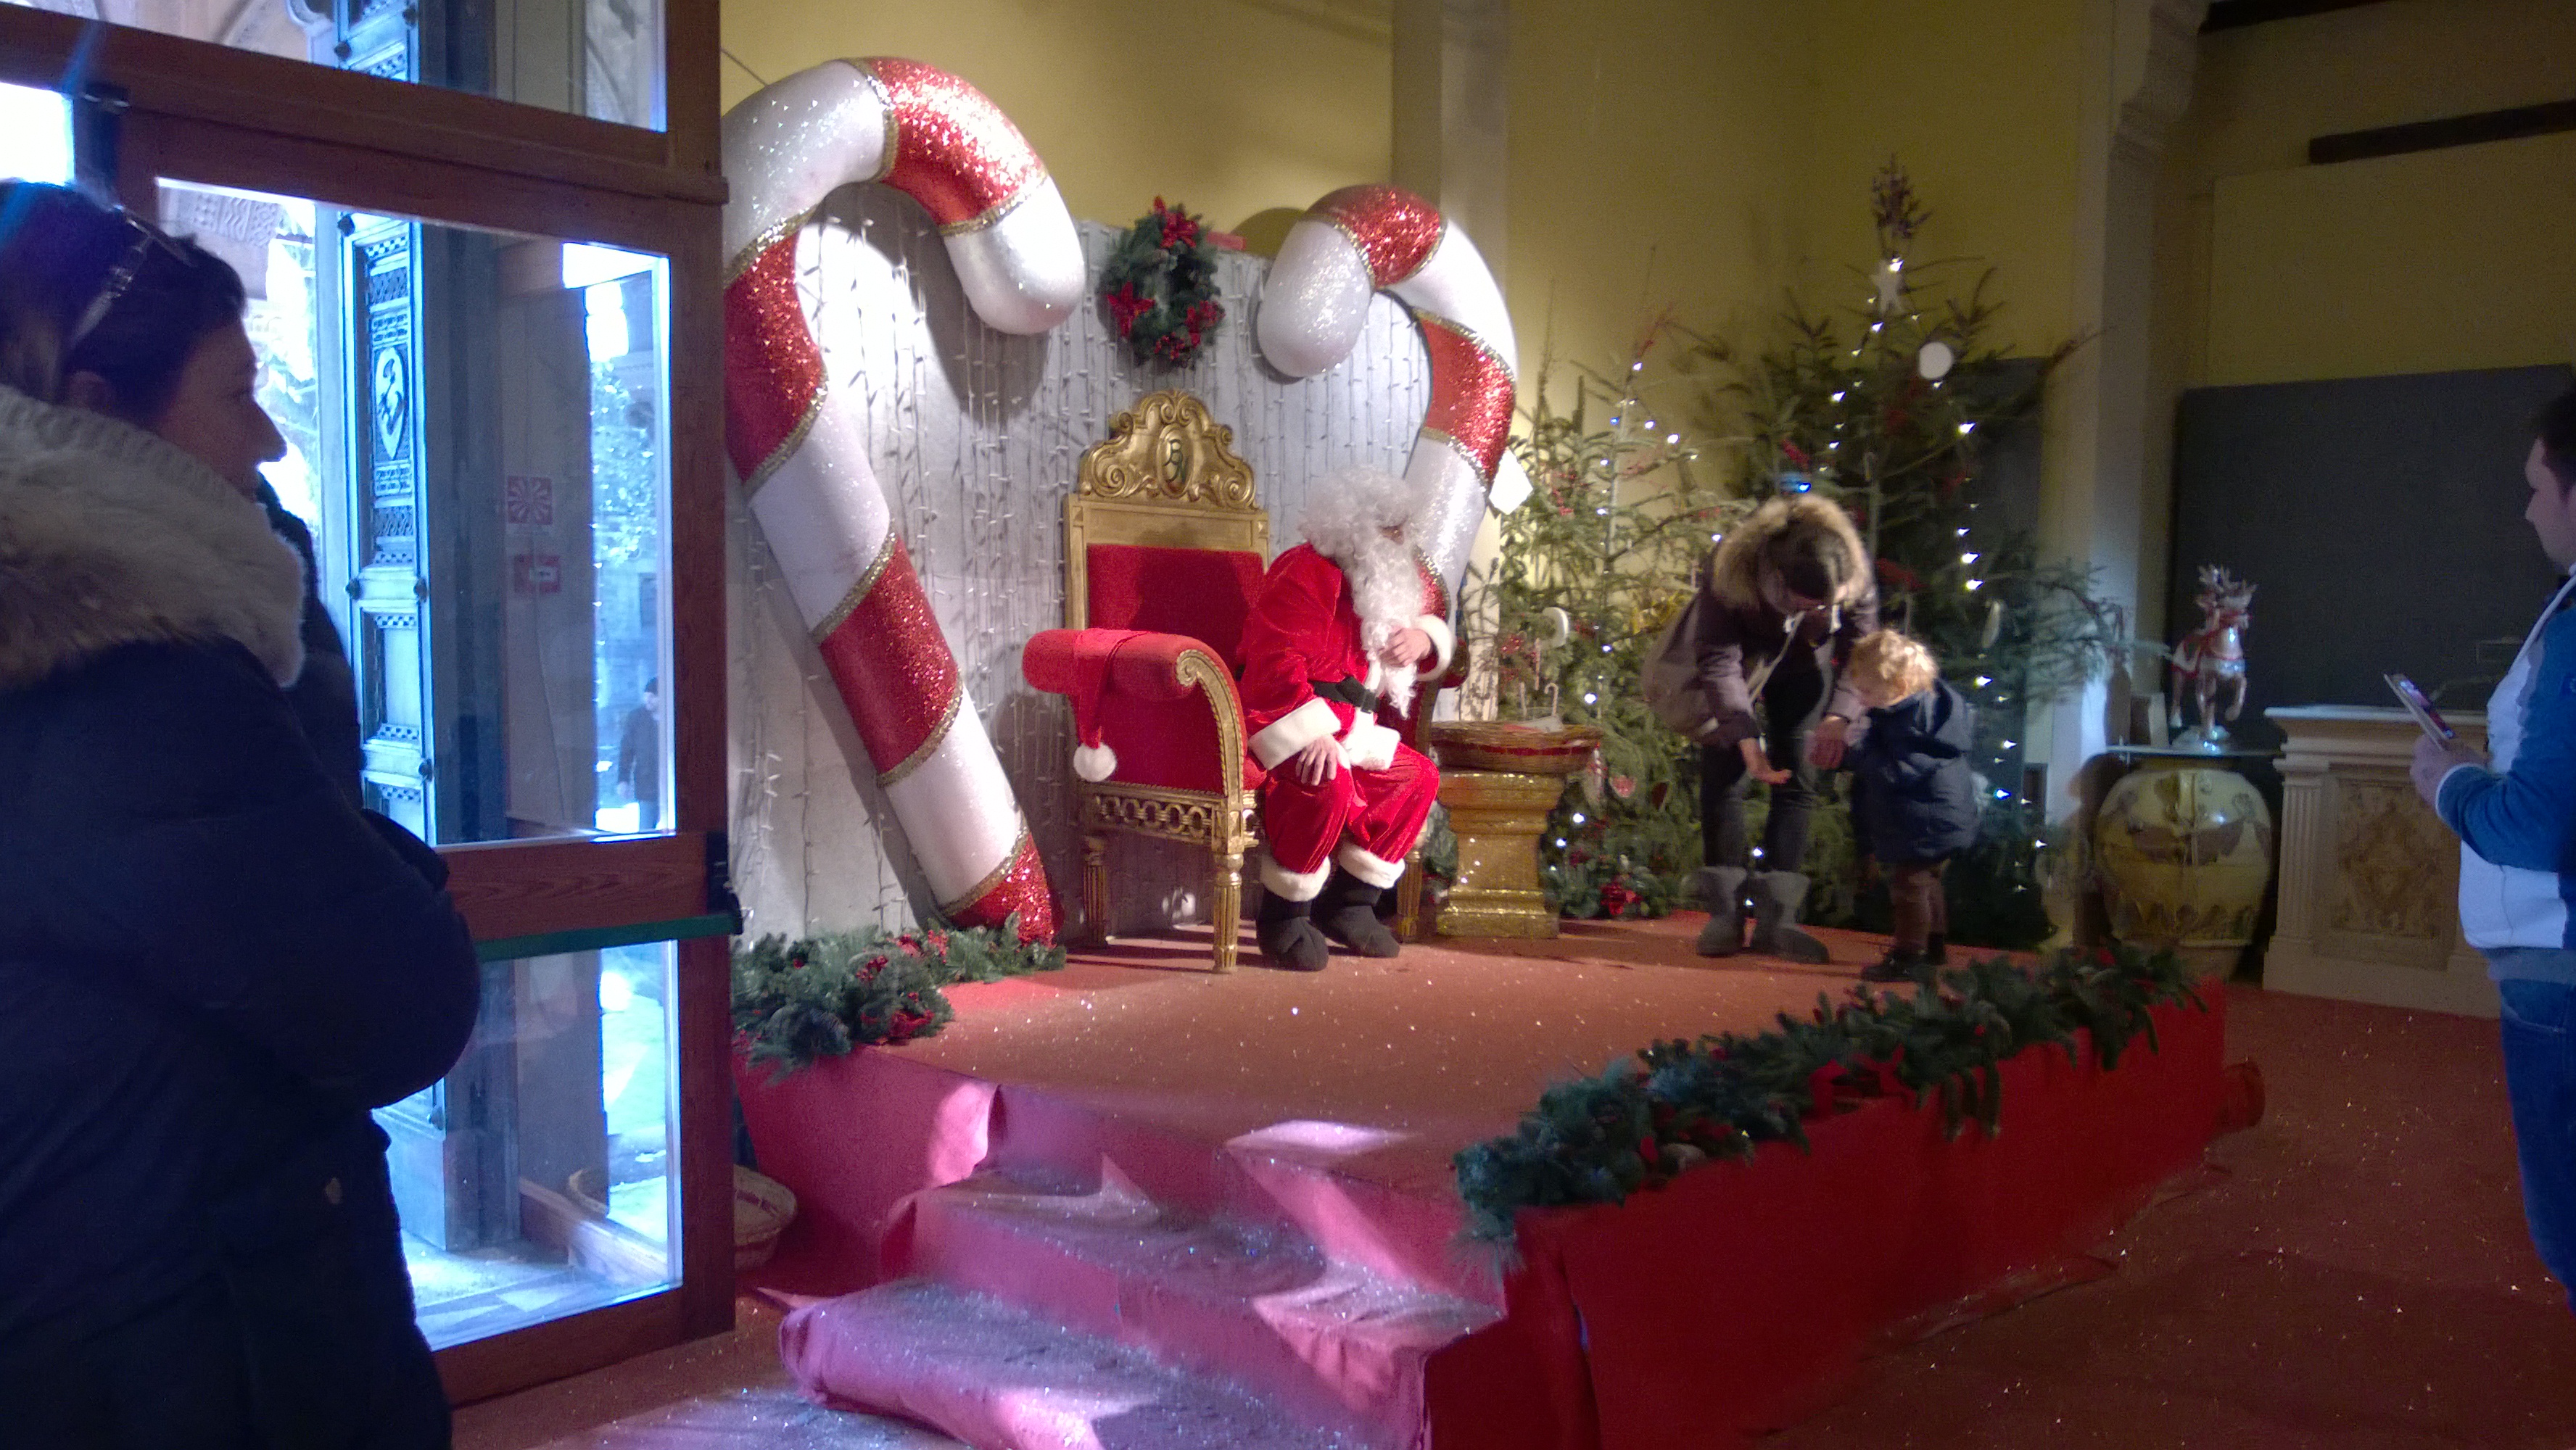 Capodanno Alla Casa Di Babbo Natale.La Casa Di Babbo Natale Montecatini Terme Vacanze Di Natale 2014 Racconti Dal Passato